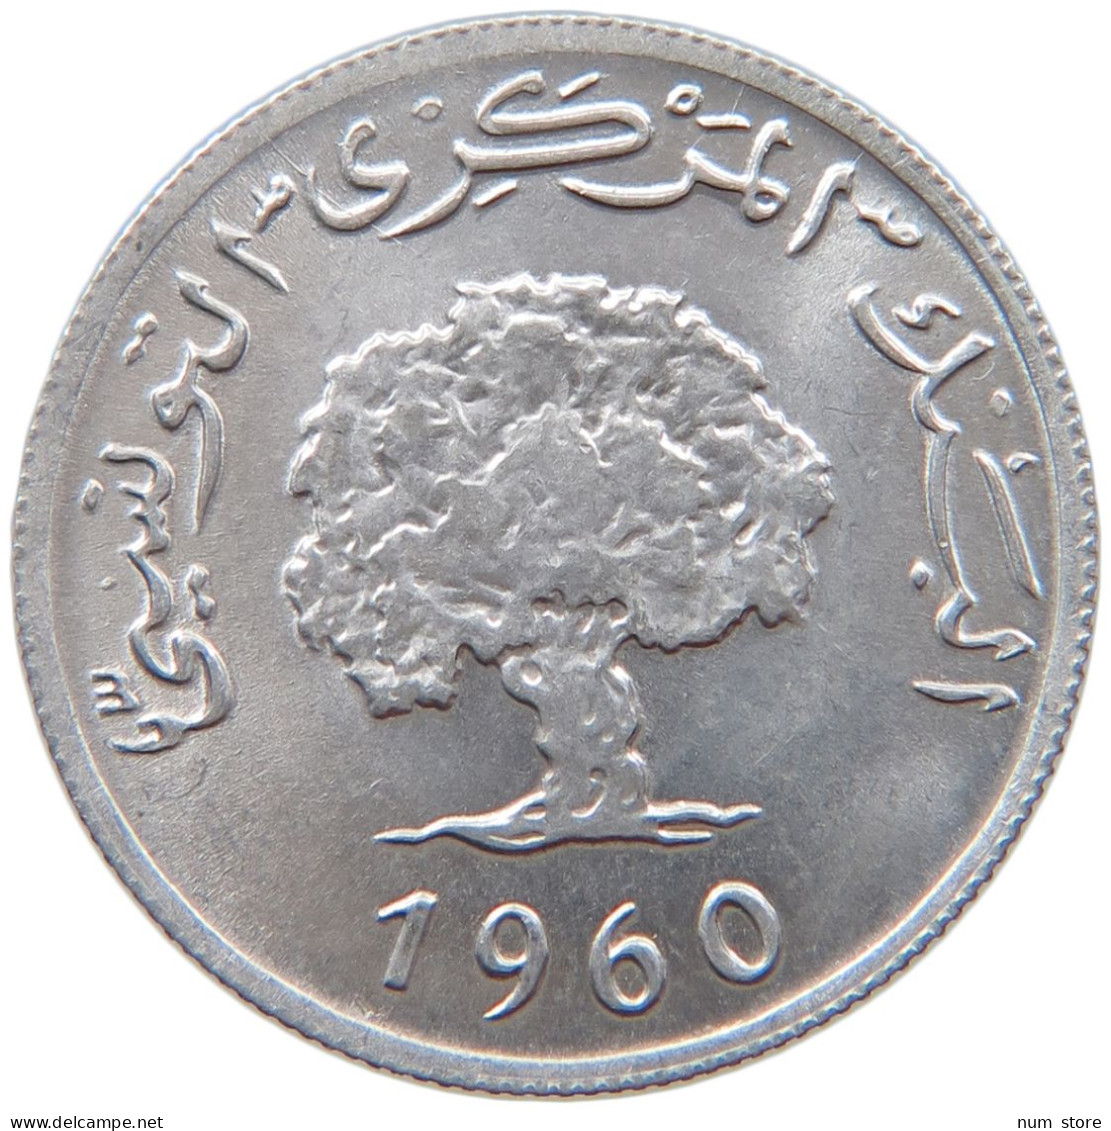 TUNISIA 2 MILLIEMES 1960  #s018 0103 - Tunisie